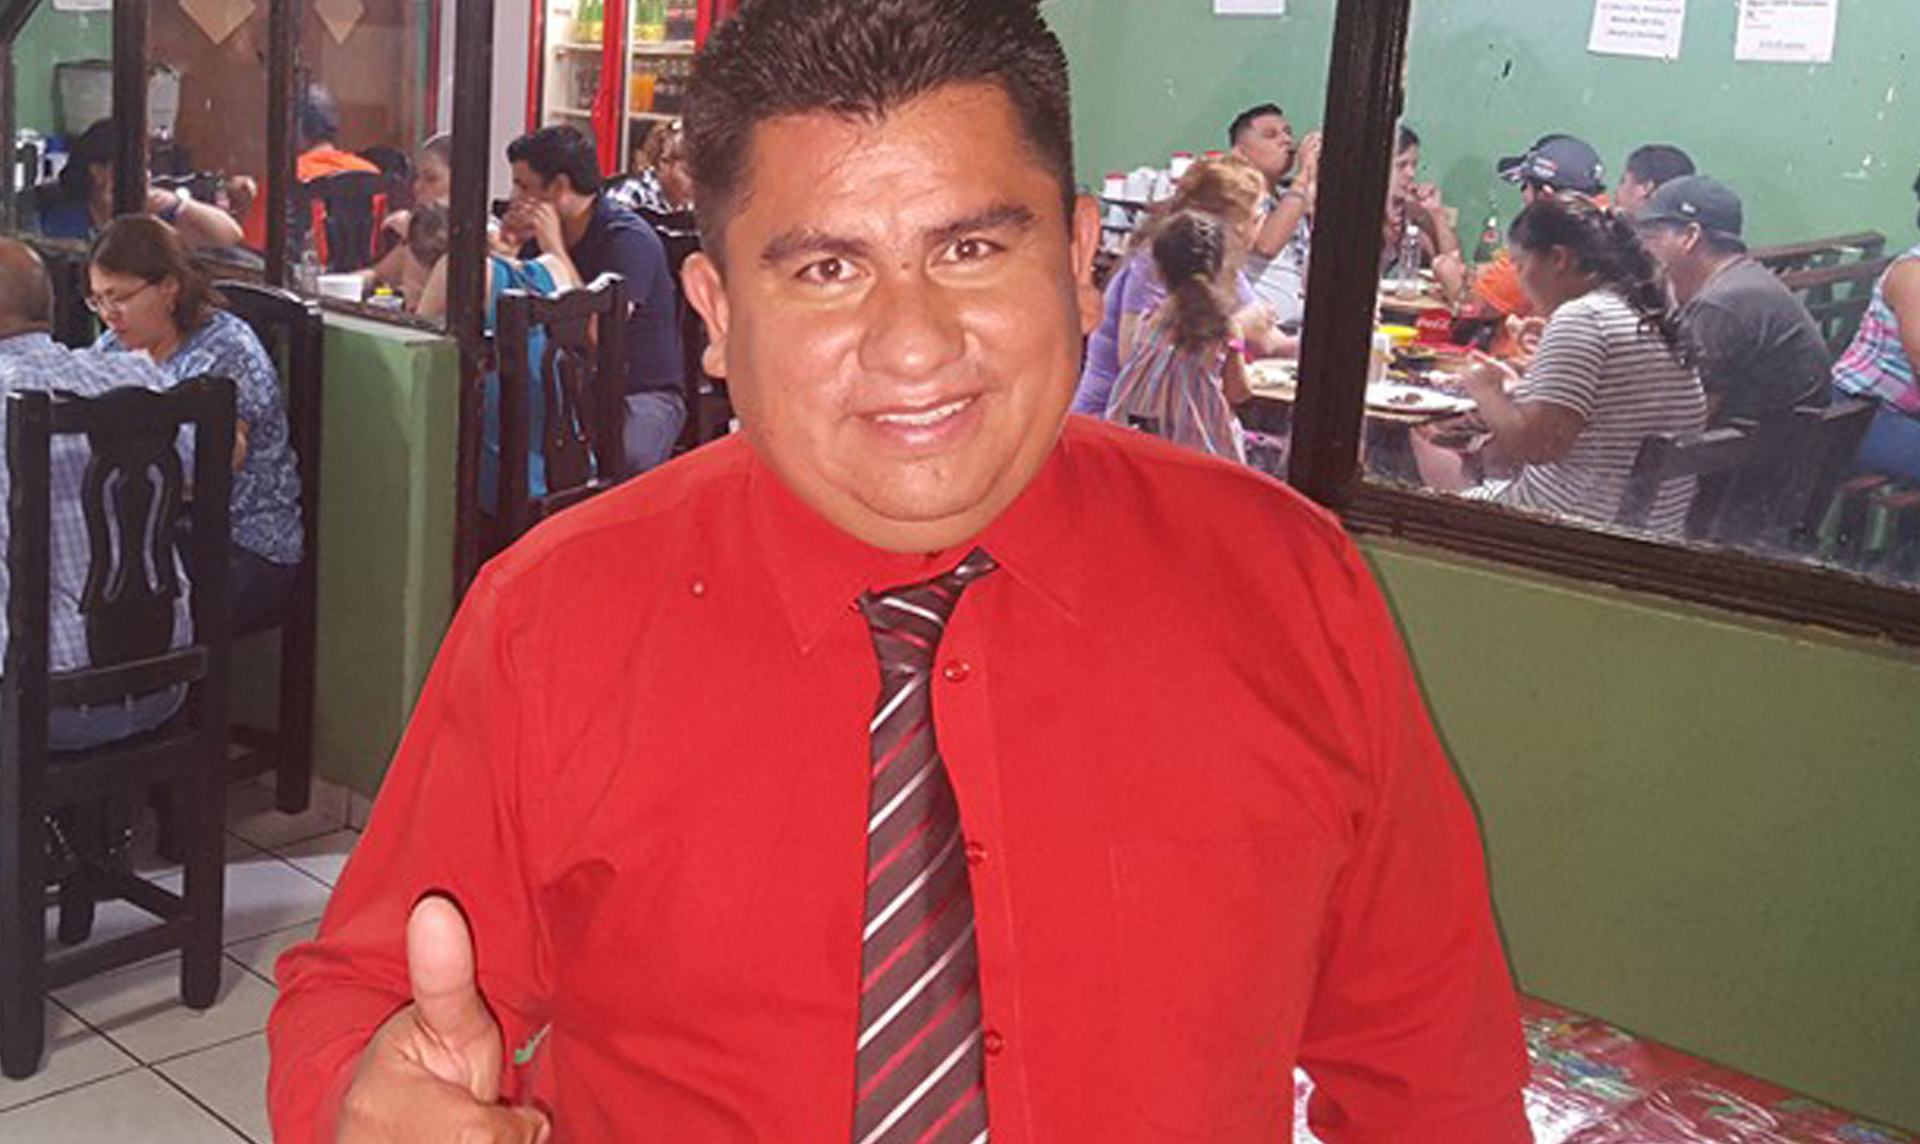 Candidato a alcalde en Coahuila es vinculado con el narco